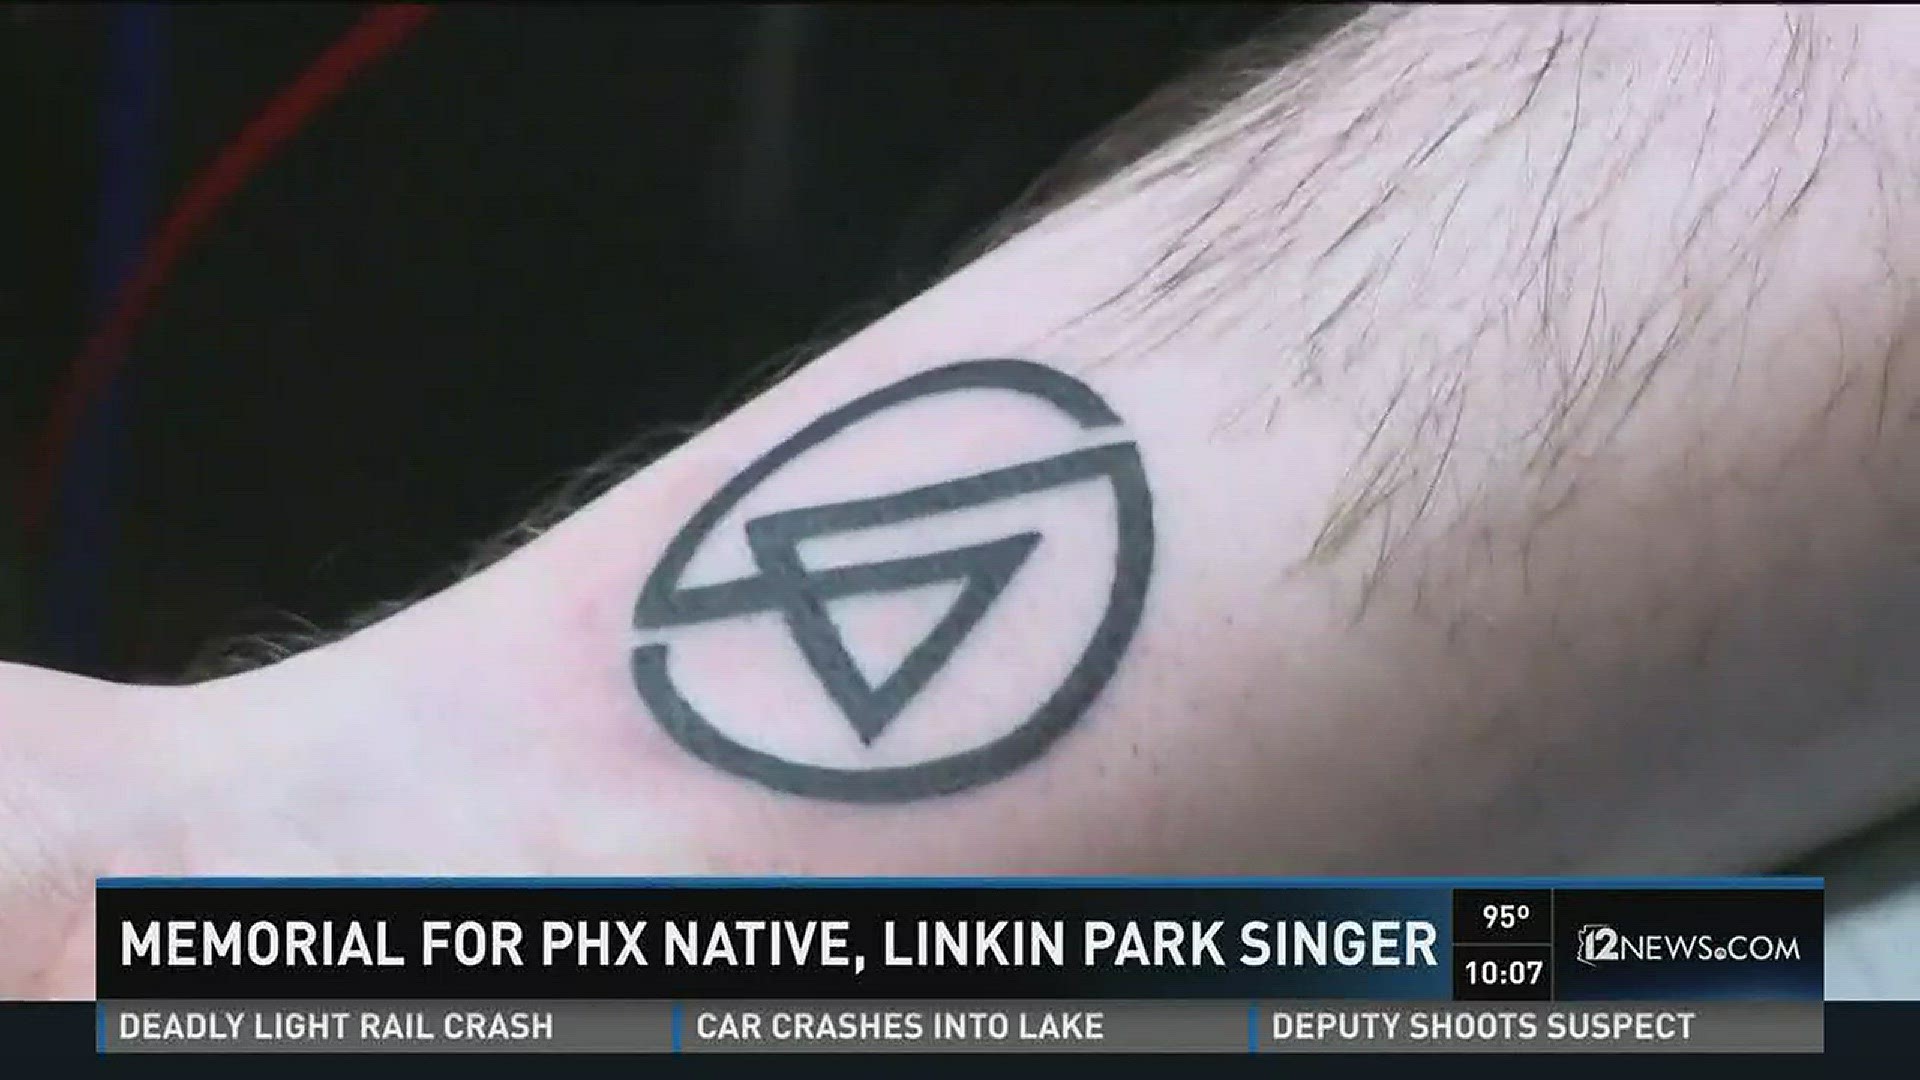 Zen Tattoo  Mr Rock  Zen Tattoo  Fire Tattoo Chester Bennington  Linkin  Park tattoo tatuagem tatuaje tatouaje tatuaggio zentattoo mrrock  oblogdozen taquaritinga taquaritingasp inklife inklovers instattoo  instaink santaernestina 